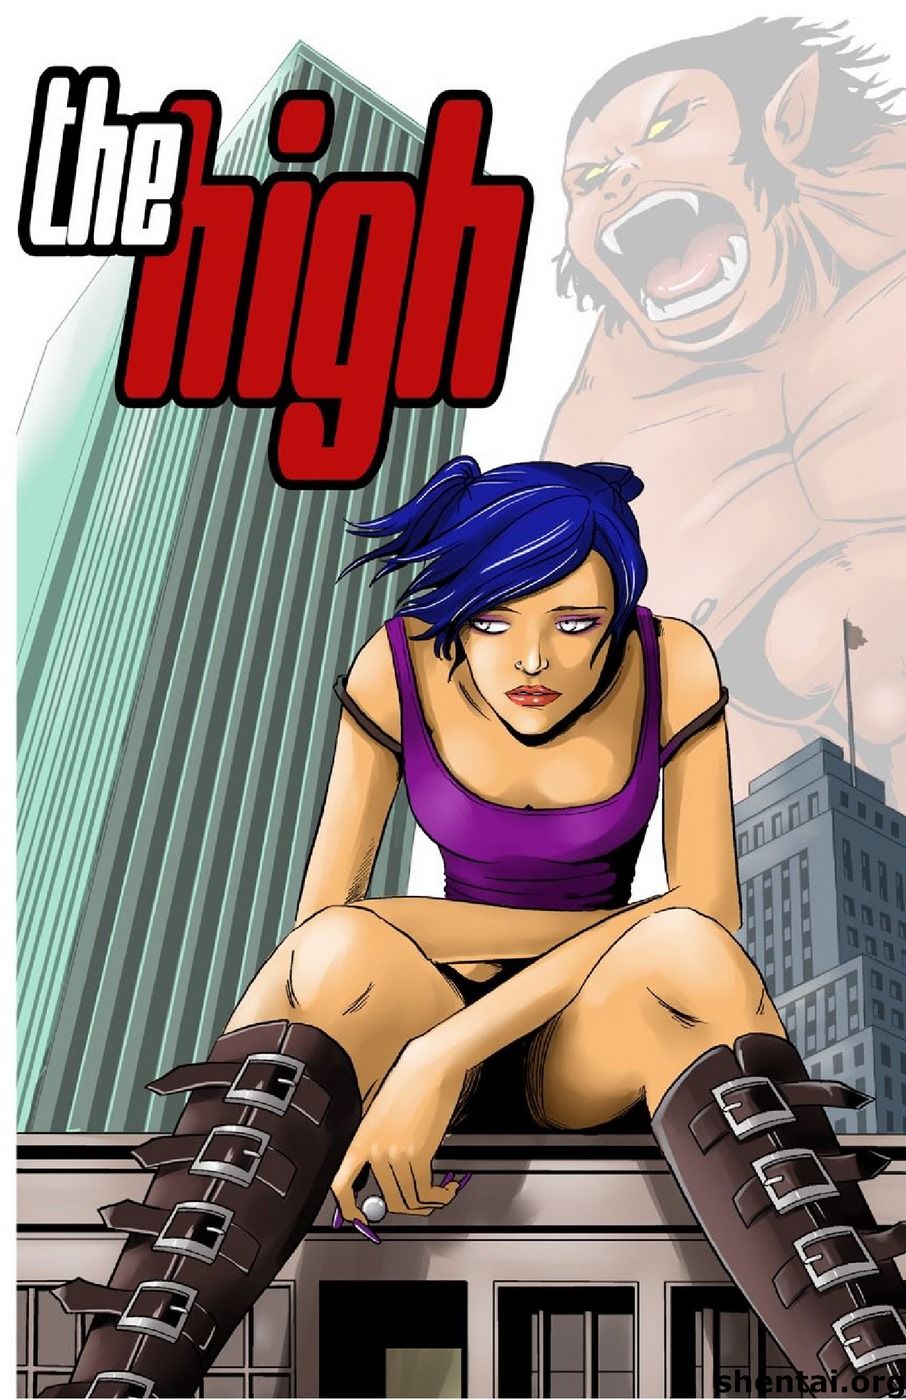 Giantess - The High,Big Girl page 1